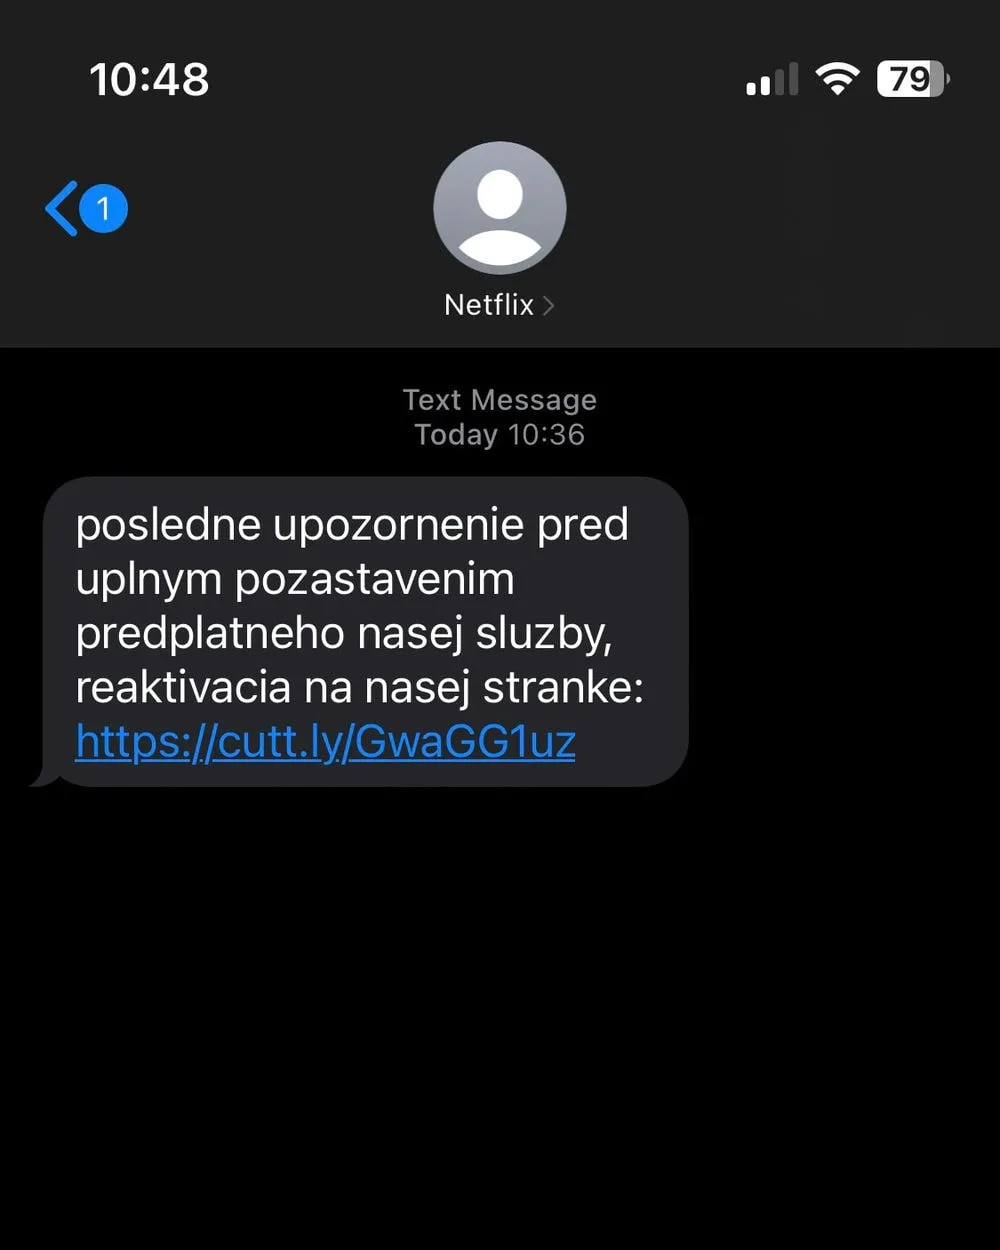 ESET - útočníci sa cez SMS vydávajú za Netflix